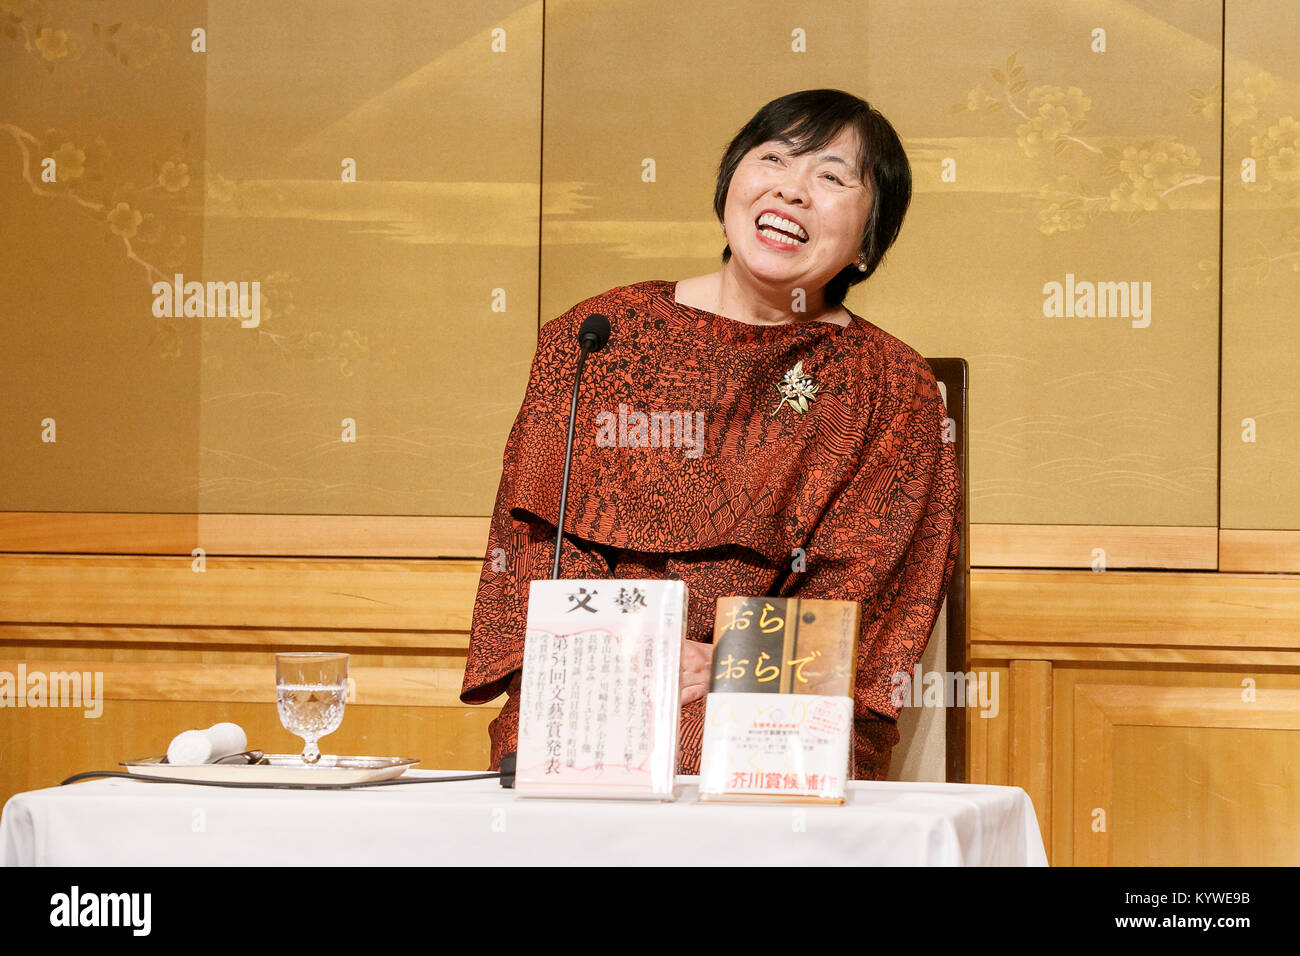 El ganador del Premio Akutagawa 158Chisako Wakatake asiste a una conferencia de prensa en el Hotel Imperial el 16 de enero de 2018, en Tokio, Japón. Chisako Wakatake ganó el Premio Akutagawa 158por su libro ''Ora orade hitori egumo (YO, YO desaparecerán todas por mí)'', junto con la yuca Ishi, quien ganó el premio de ''Hyaku-nen doro (Cien años) de barro''. Yoshinobu Kadoi recibió el Premio Naoki 158por su libro ''Ginga tetsudo no chichi (el padre del Ferrocarril Galáctico)." Los dos premios literarios se estableció en 1935 y se otorgan semestralmente al mejor seria historia publicada en un periódico Foto de stock